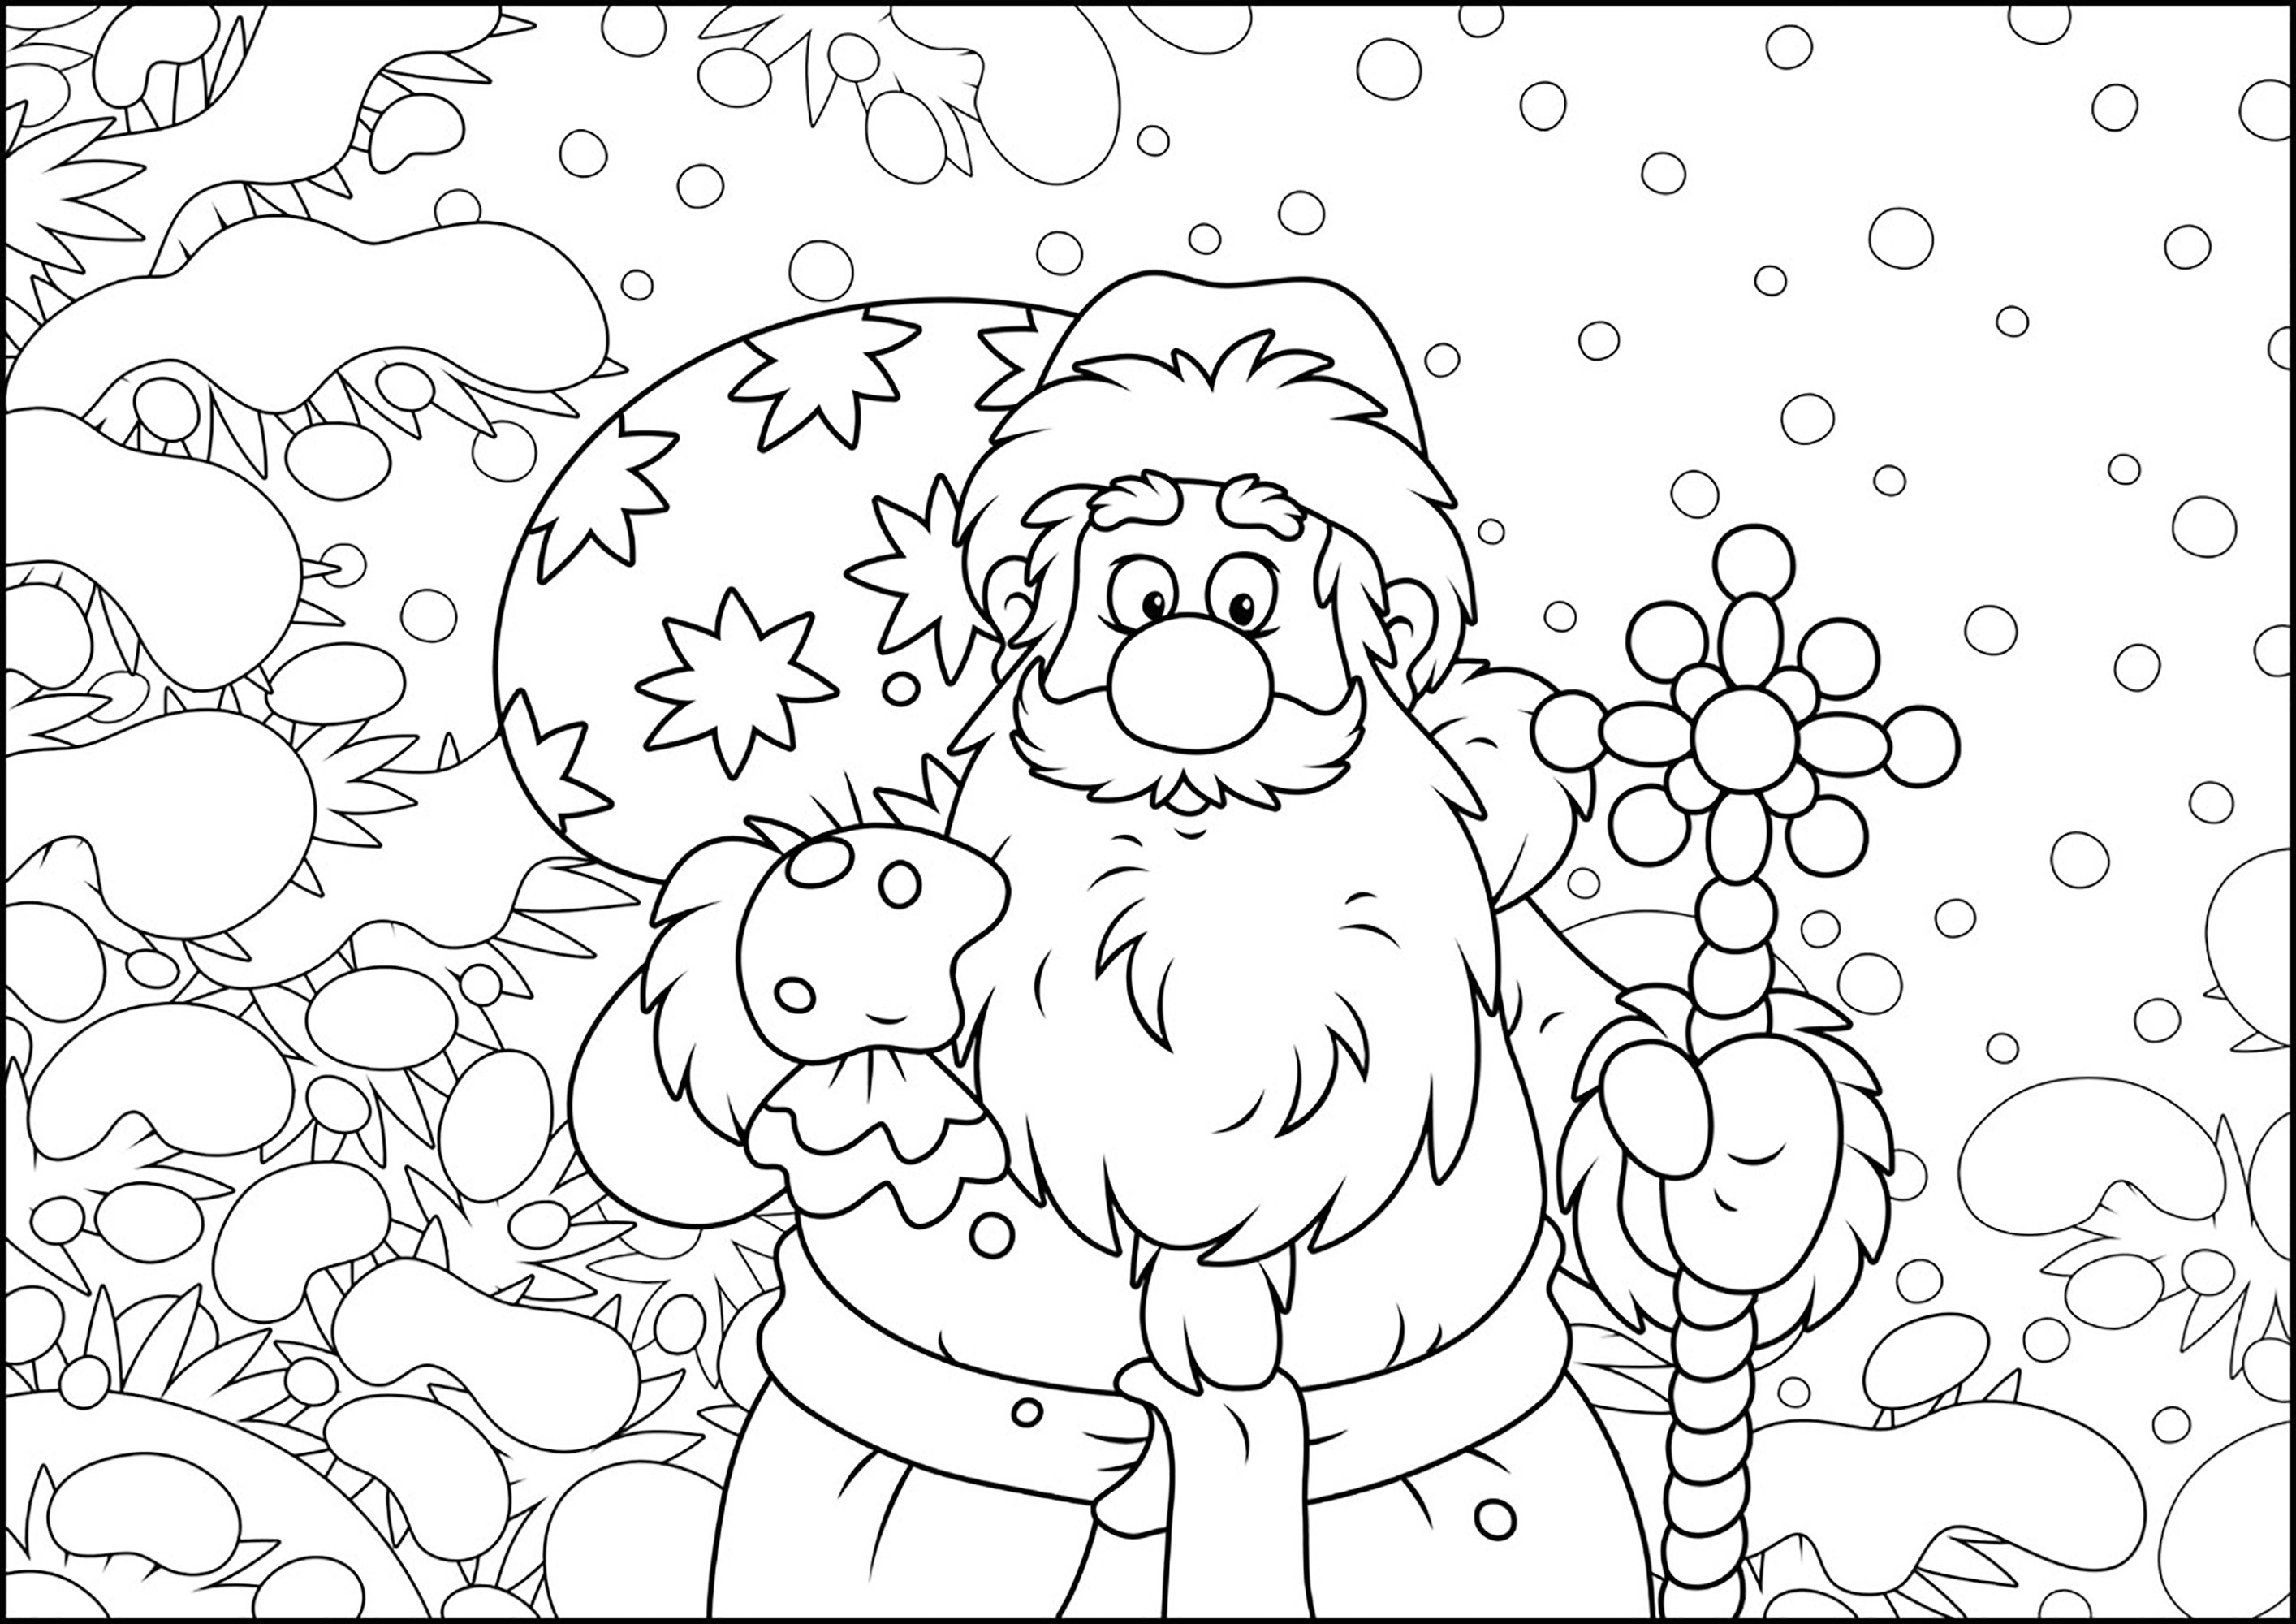 Der Weihnachtsmann im Cartoon-Modus. Färben Sie diesen Weihnachtsmann, der in einer verschneiten Landschaft Geschenke an brave Kinder verteilt, Quelle : 123rf   Künstler : Alex. Bannykh